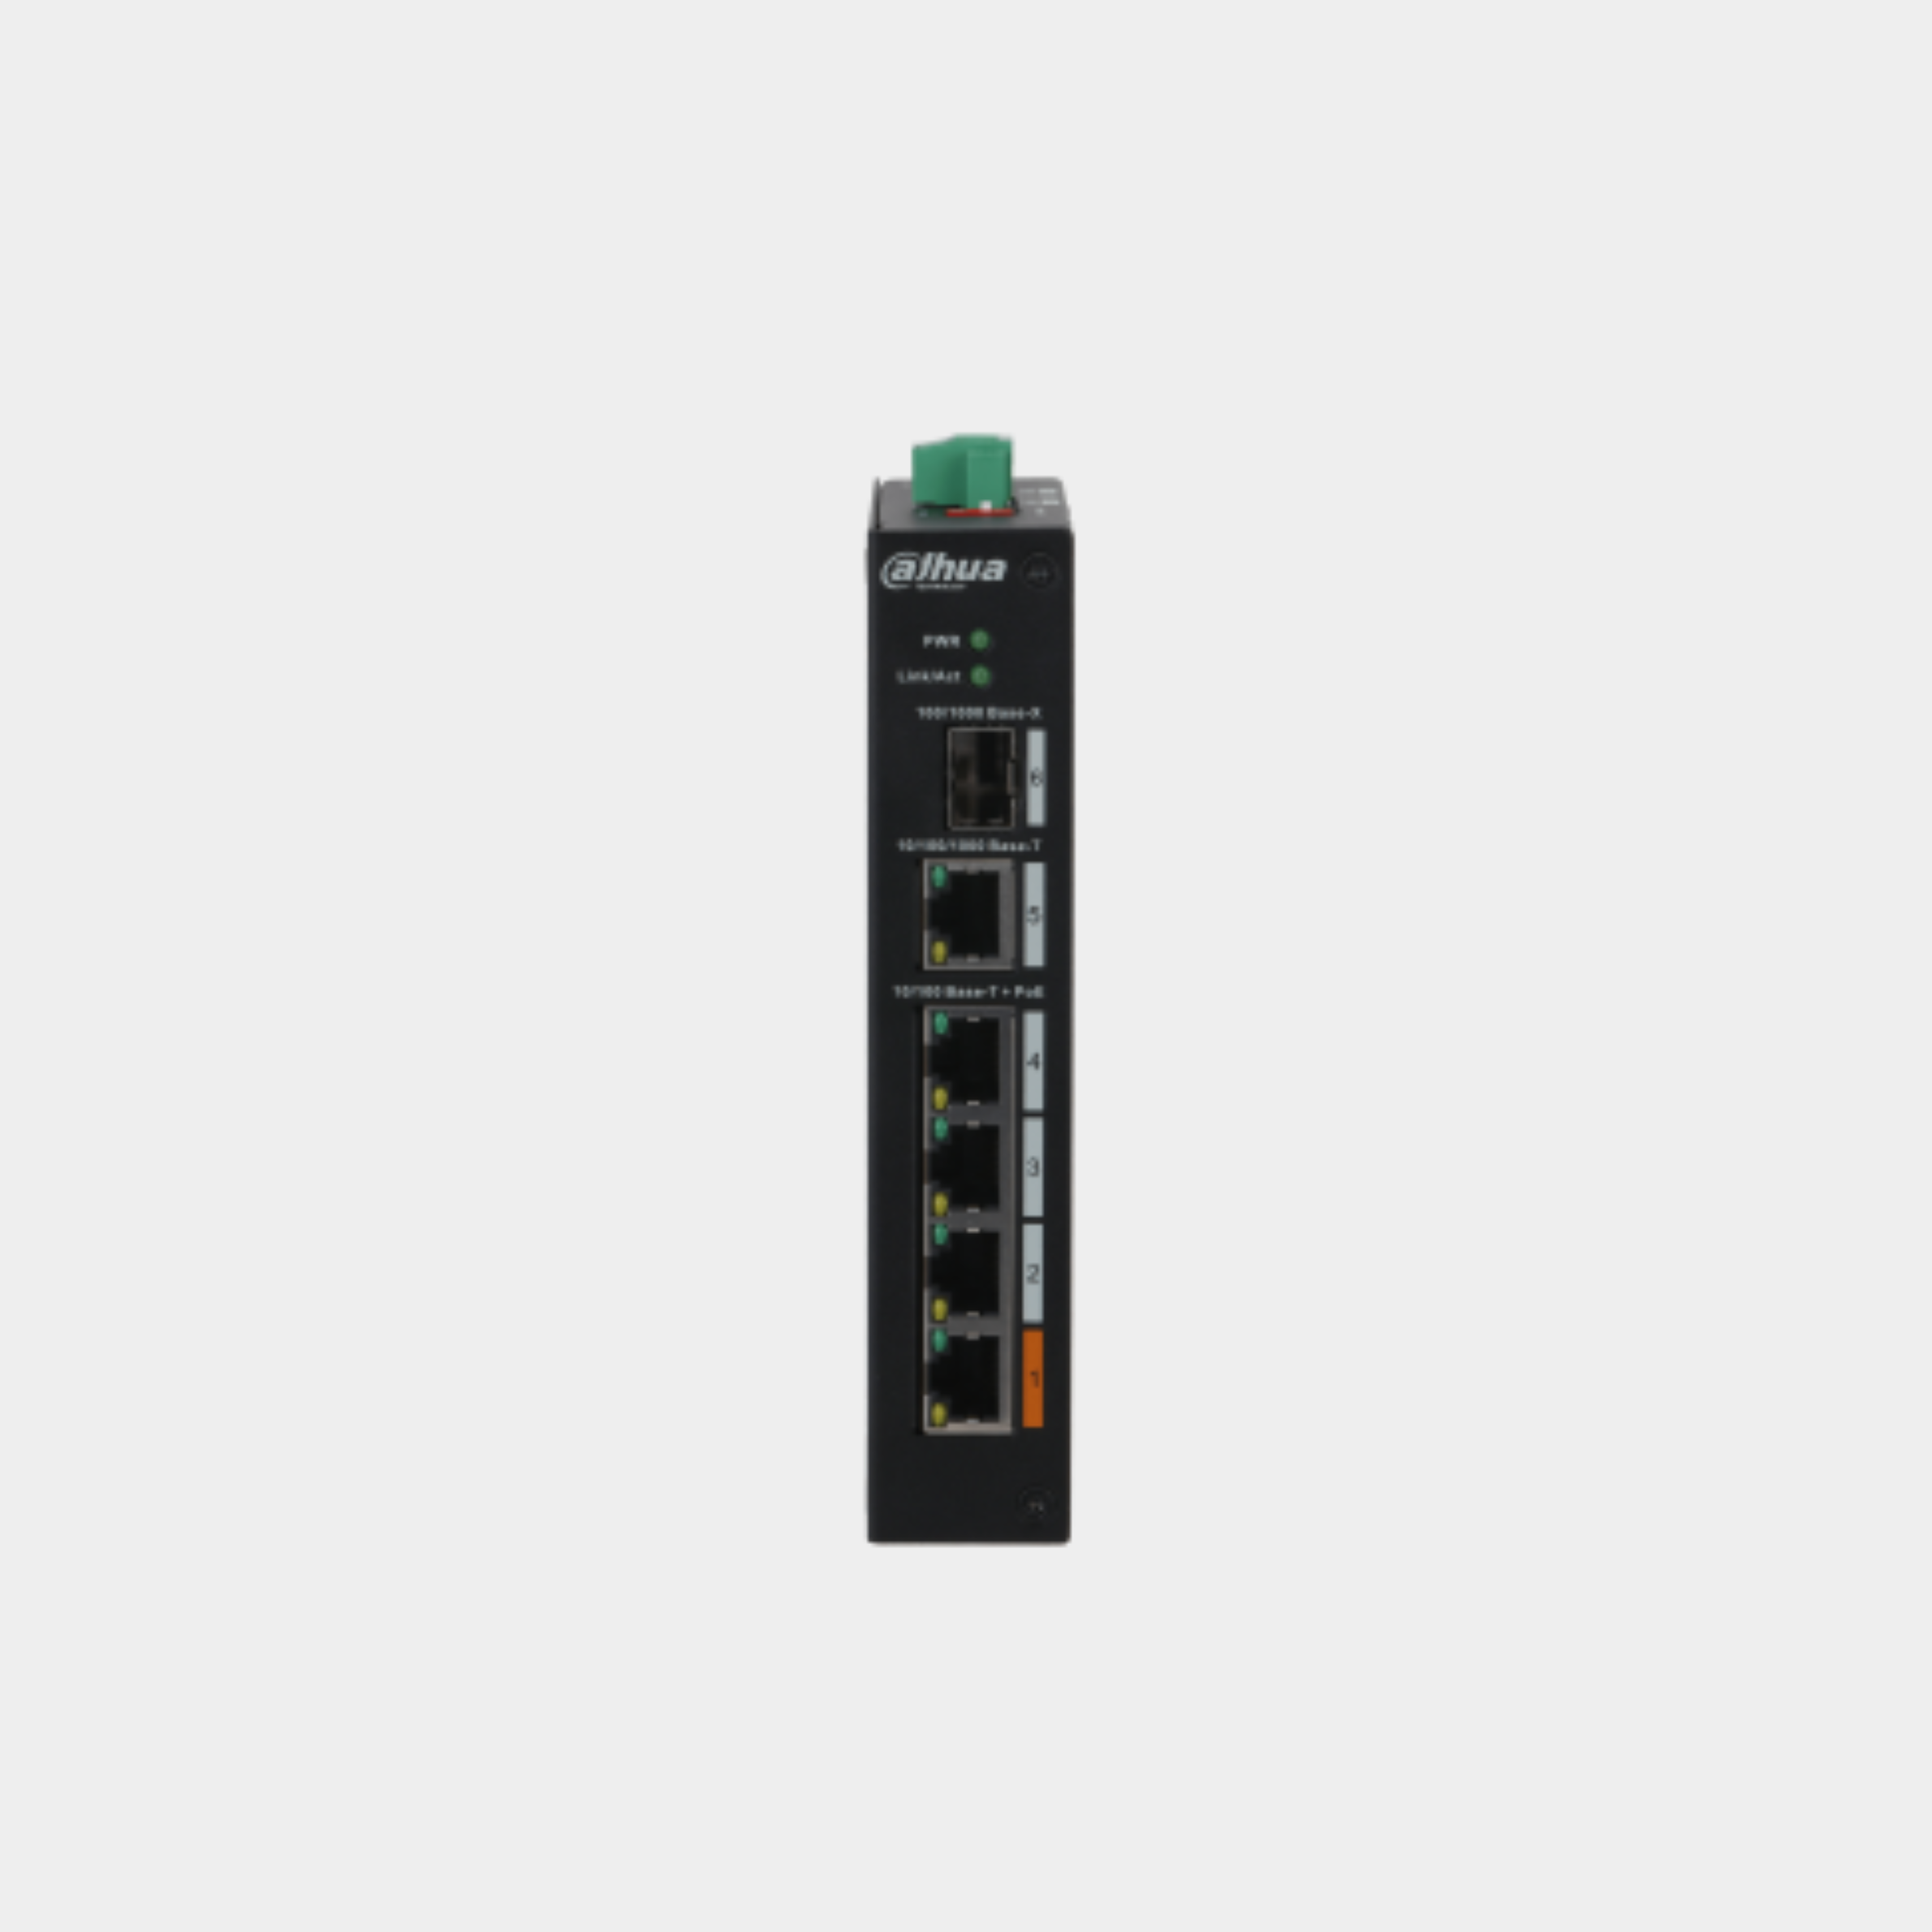 Dahua 4-Port PoE Switch (Unmanaged)(DH-PFS3106-4ET-60)